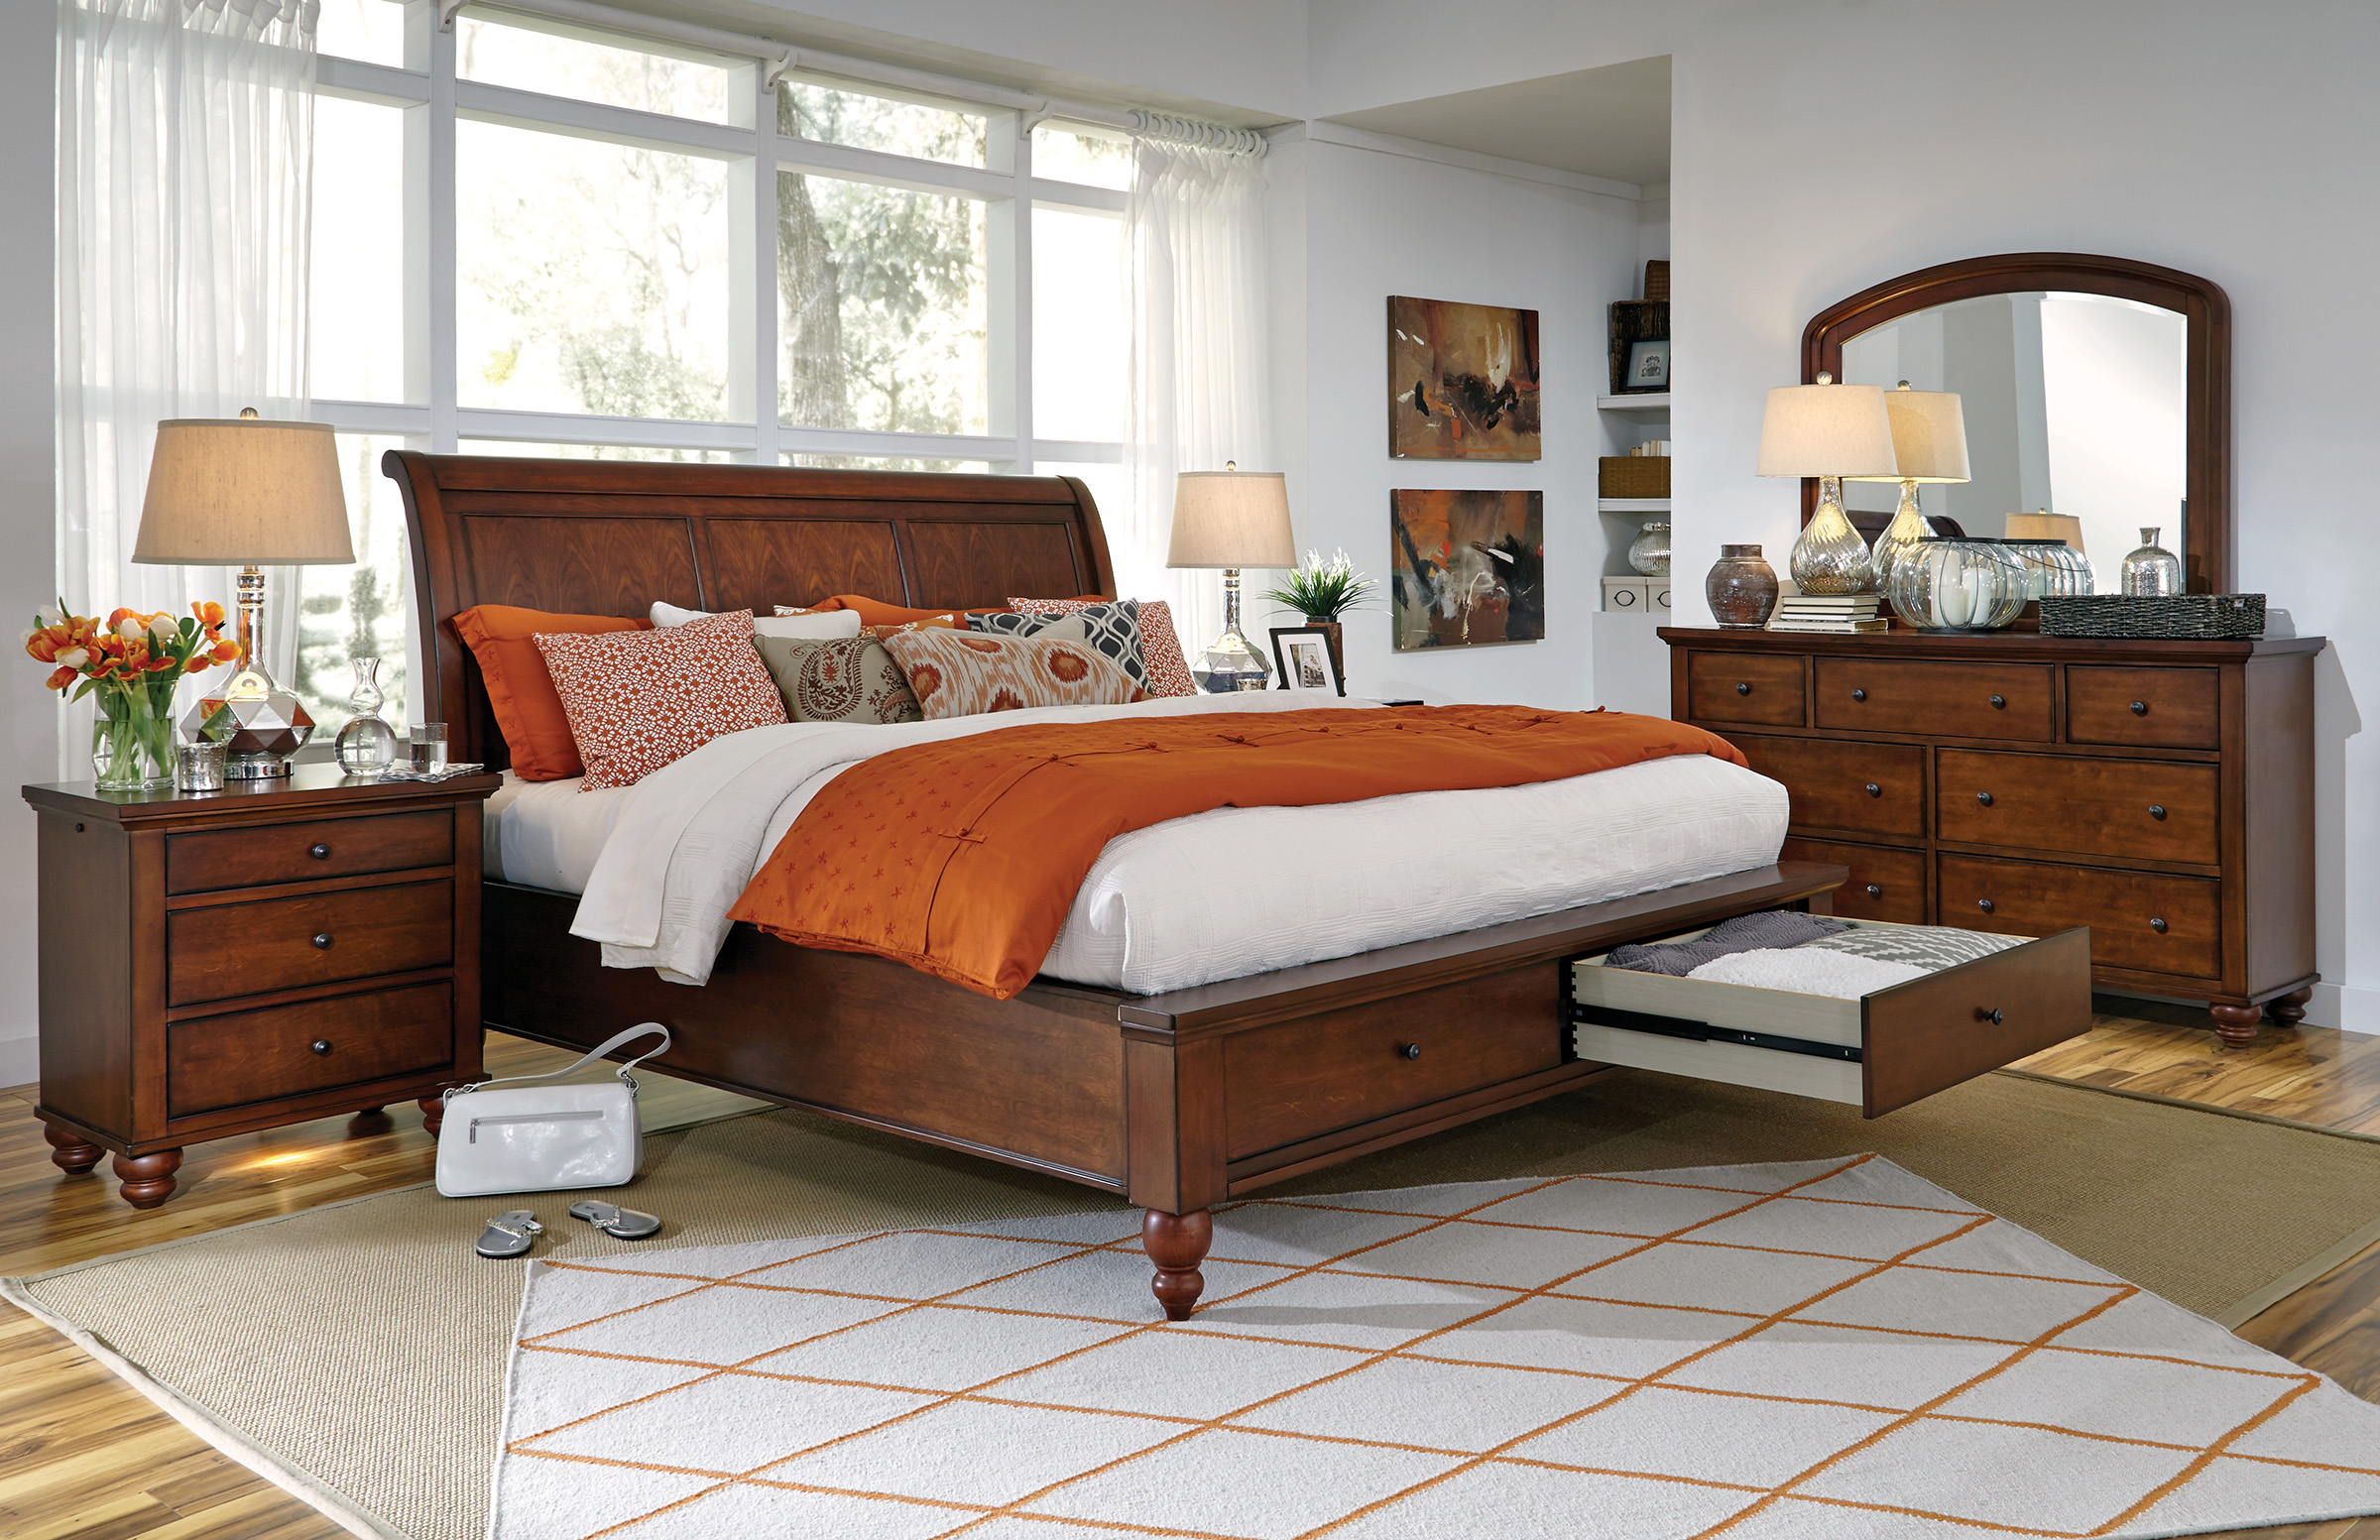 cambridge bedroom furniture macys